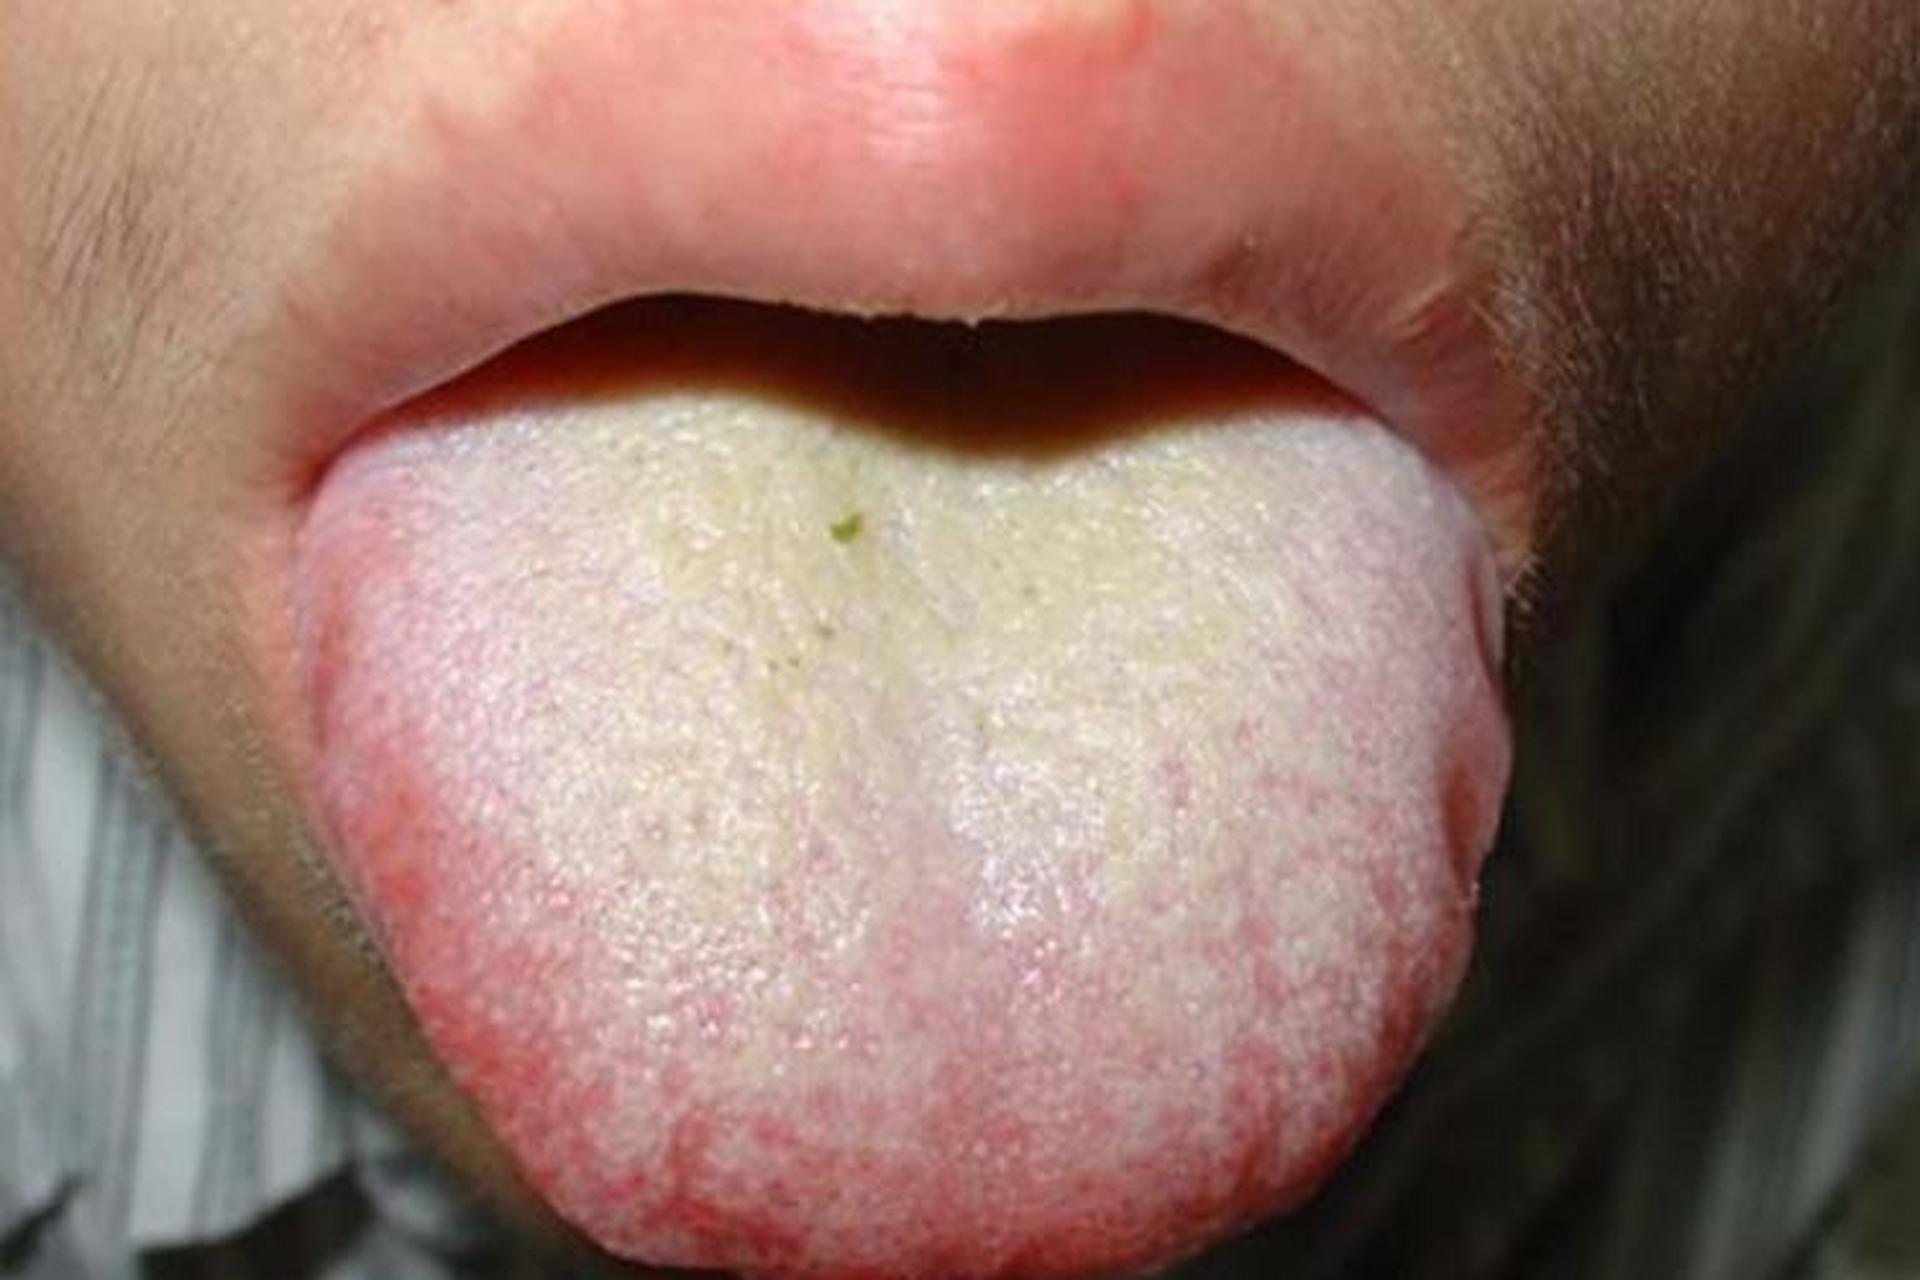 有个患者就是胸闷气短,舌苔黄腻,舌头发红 经常口苦口黏,喝不下水